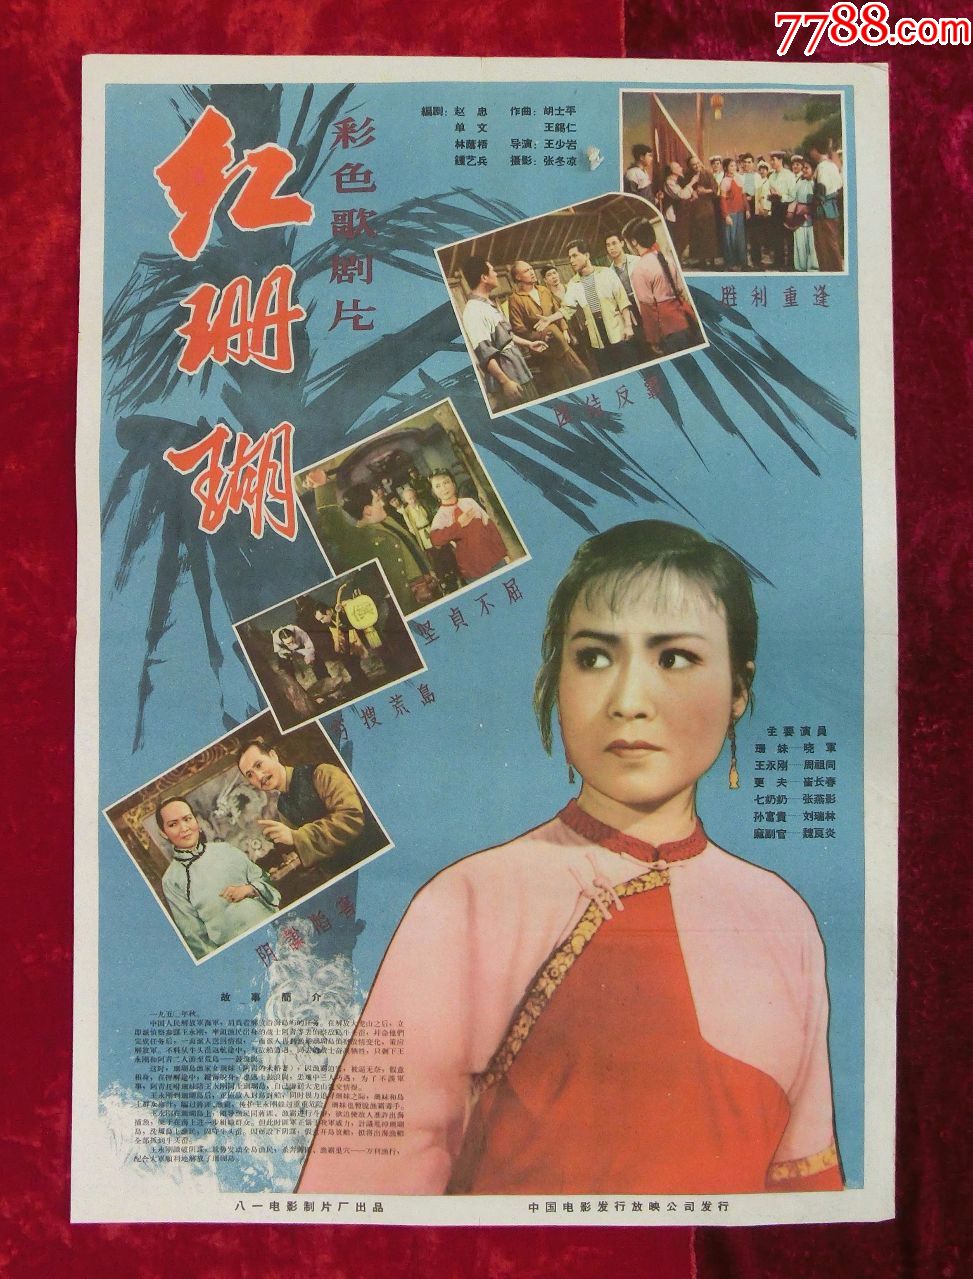 2开电影海报:红珊瑚彩色歌剧片(1961年上映)